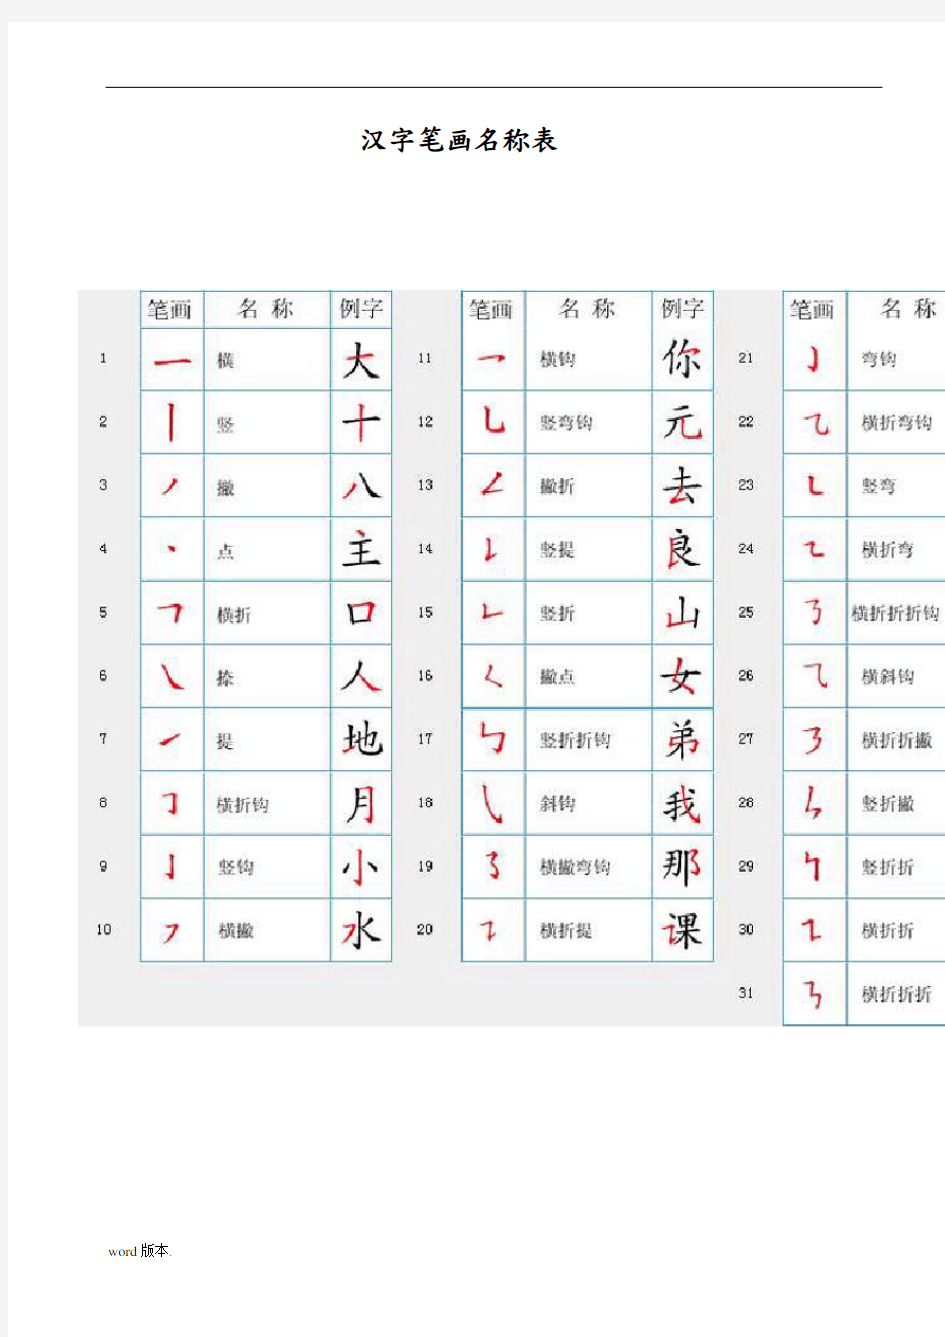 汉字笔顺规则表和笔画名称表及国家规定的汉字笔顺规则